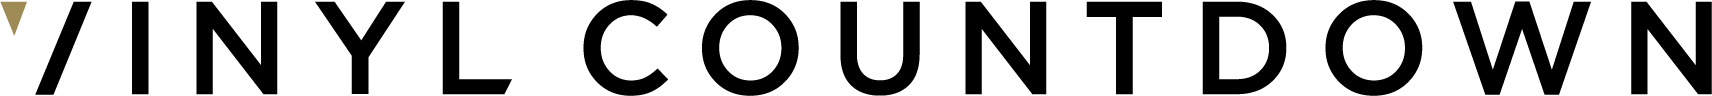 Vc Logo Text K